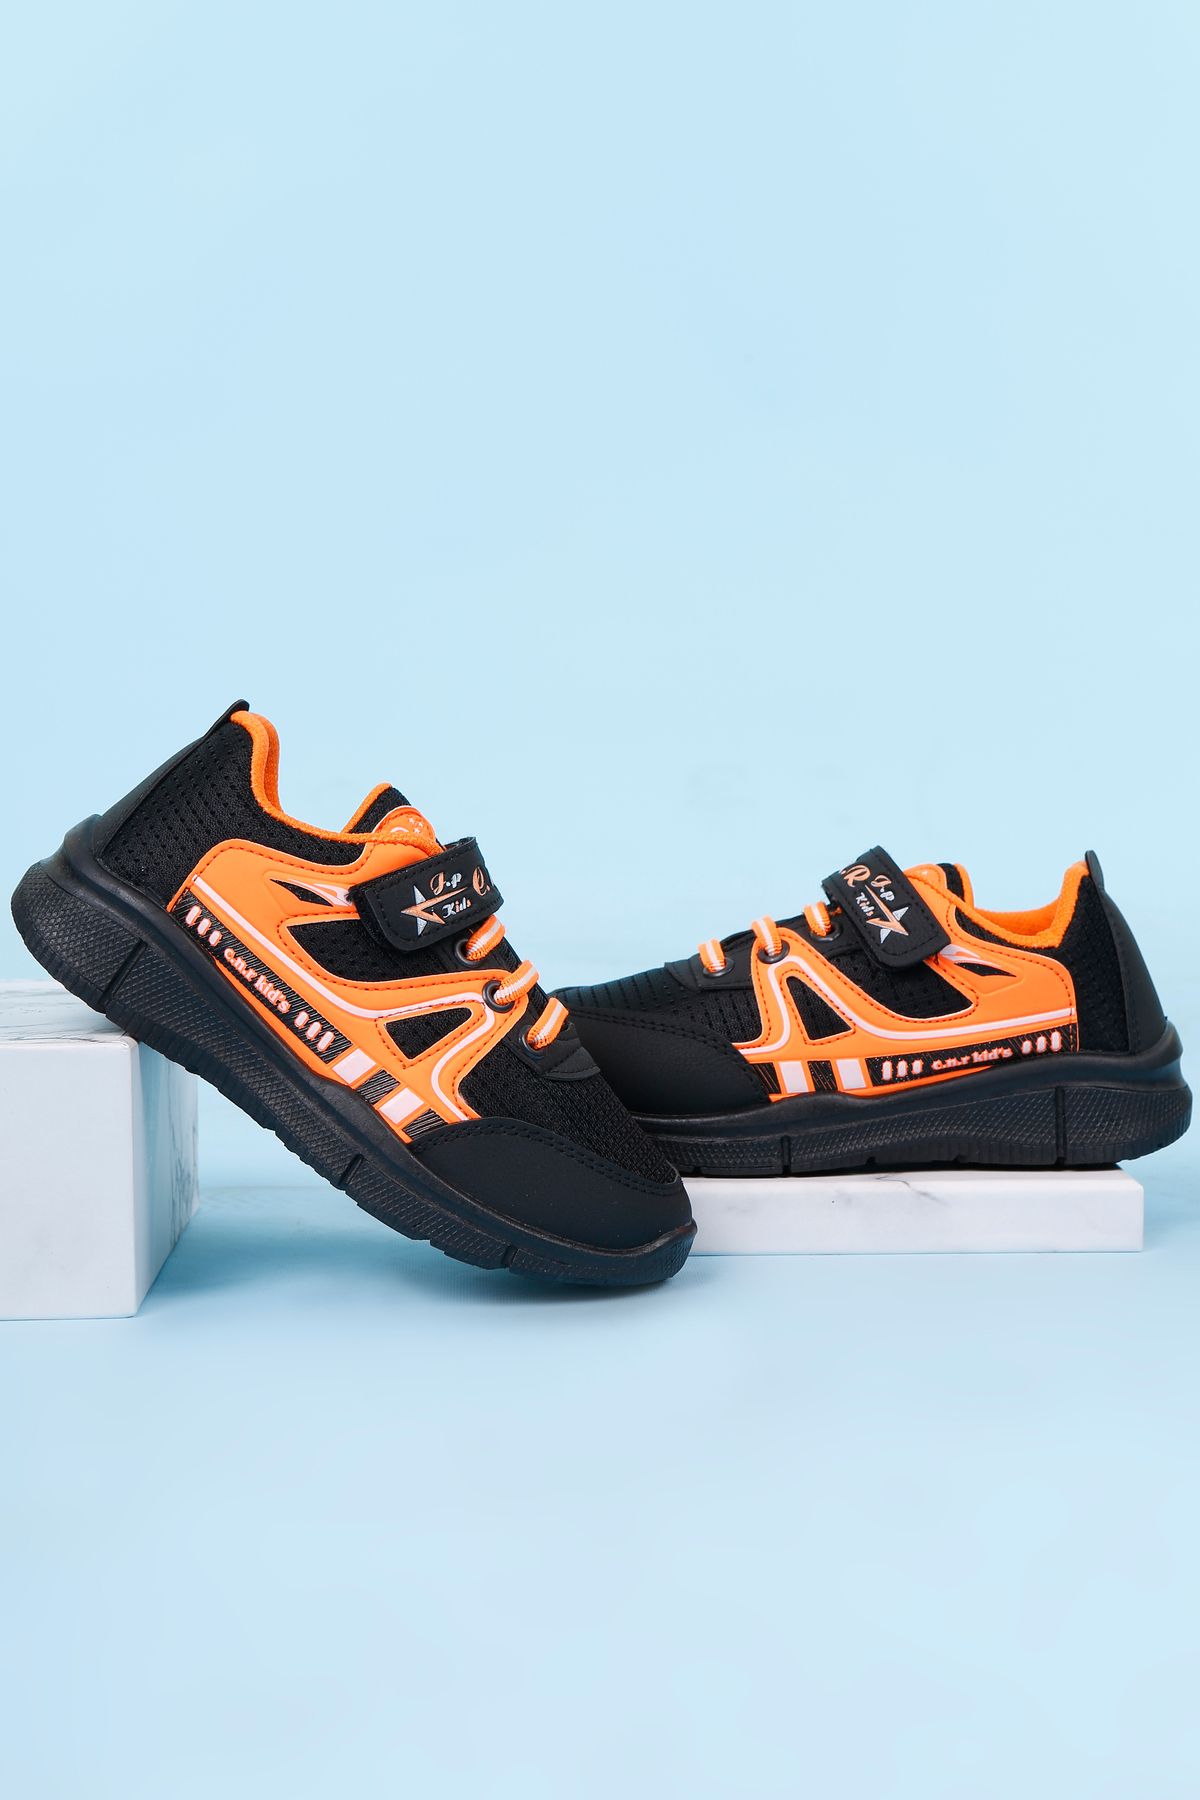 lord's ayakkabı Unisex Siyah-Turuncu Çocuk Spor Ayakkabı Sneakers Okul Ayakkabısı